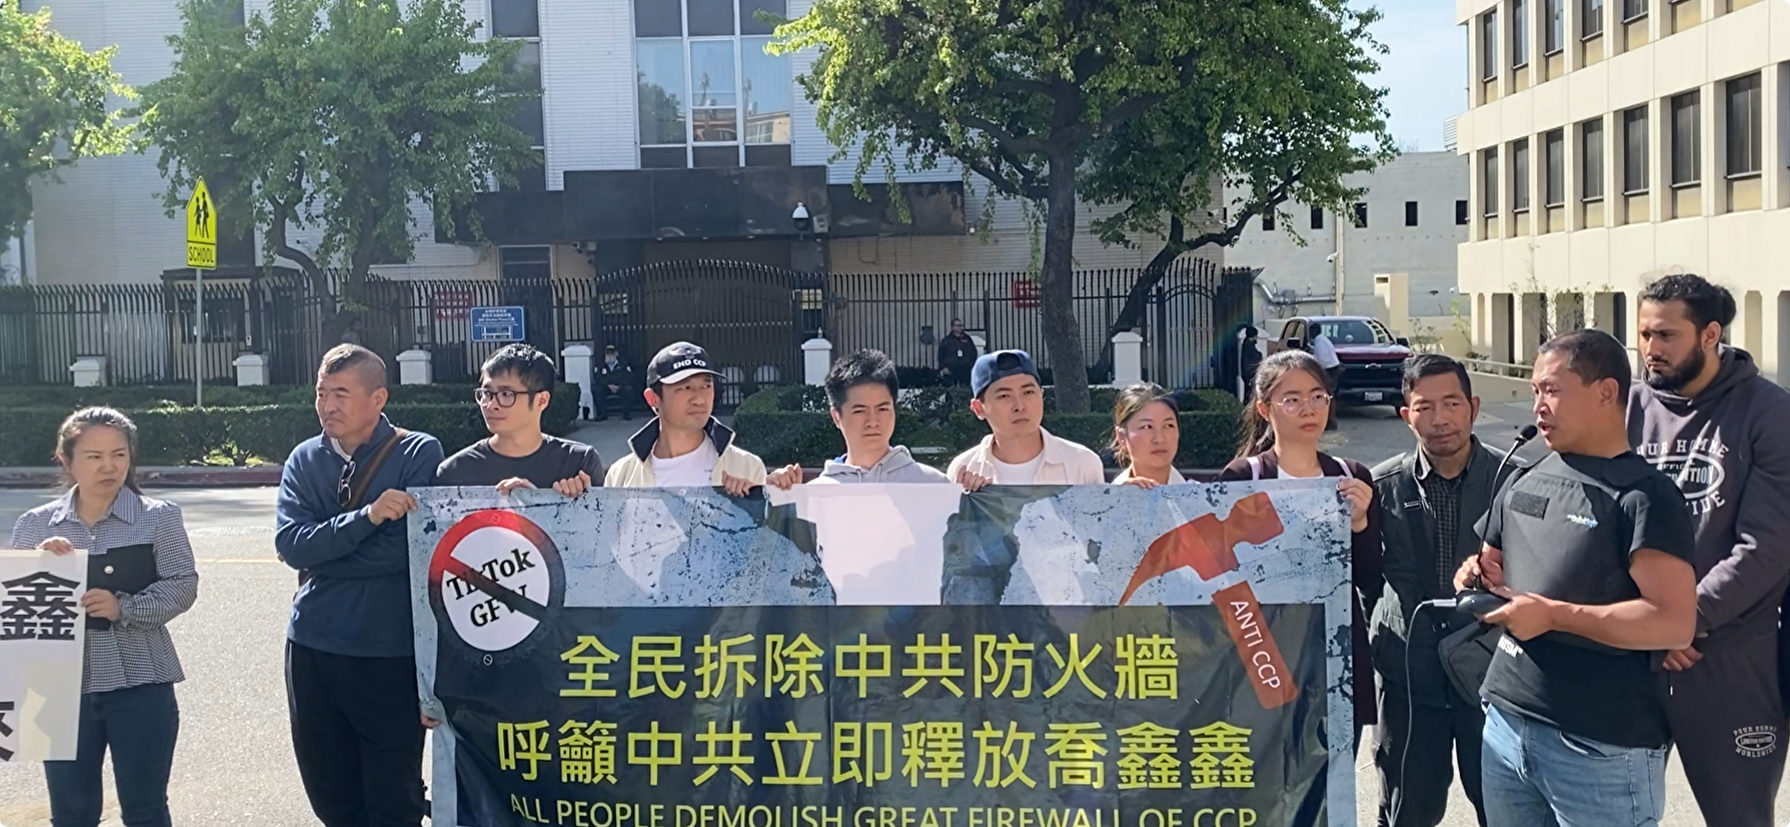 拆牆運動一周年 洛杉磯華人集會籲全民拆牆